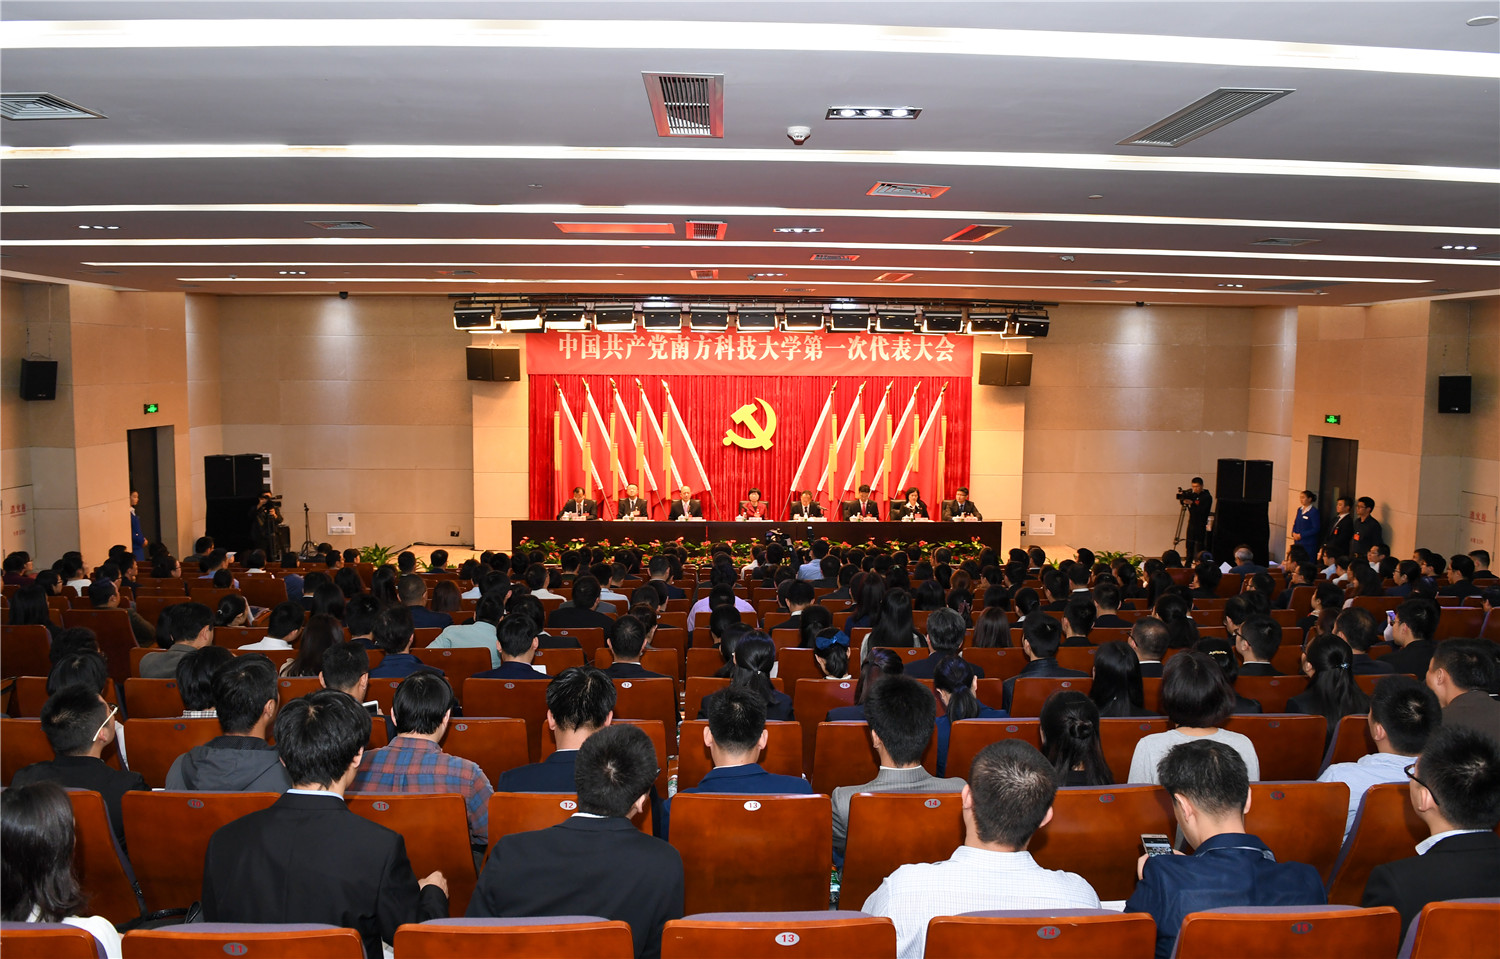 中国共产党南方科技大学第一次代表大会隆重举行